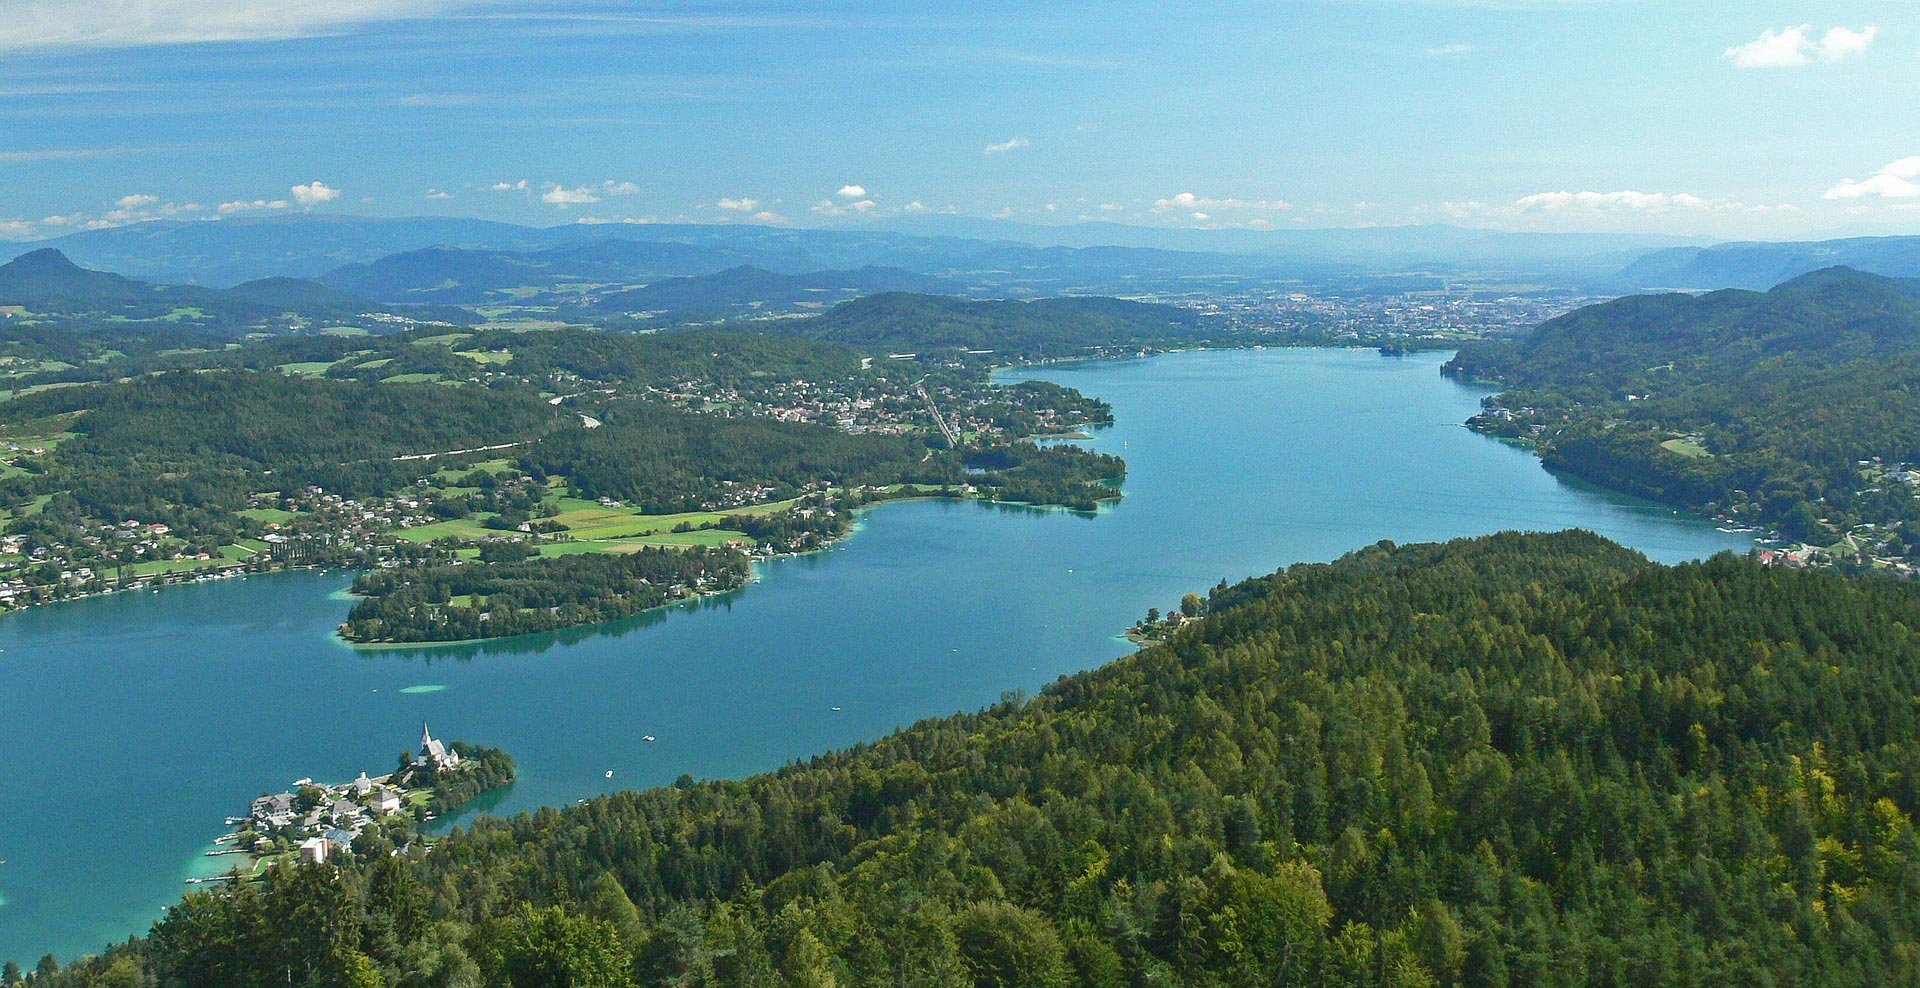 Pütra turistična agencija - Vrbsko jezero